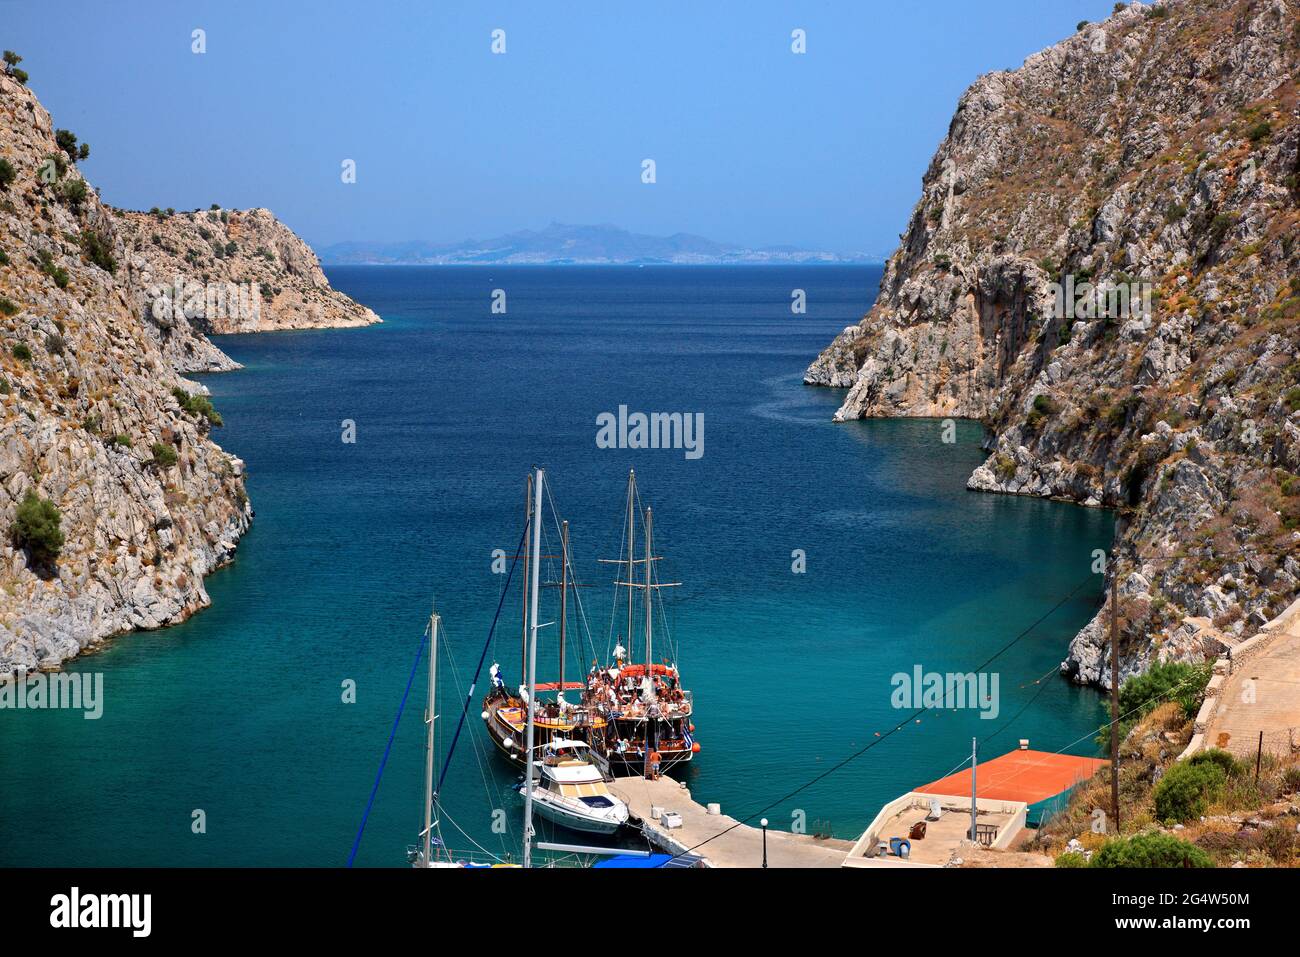 Le 'fjord' de Rina, le port pittoresque du village de Vathys, île de Kalymnos, Dodécanèse, mer Egée, Grèce. Banque D'Images